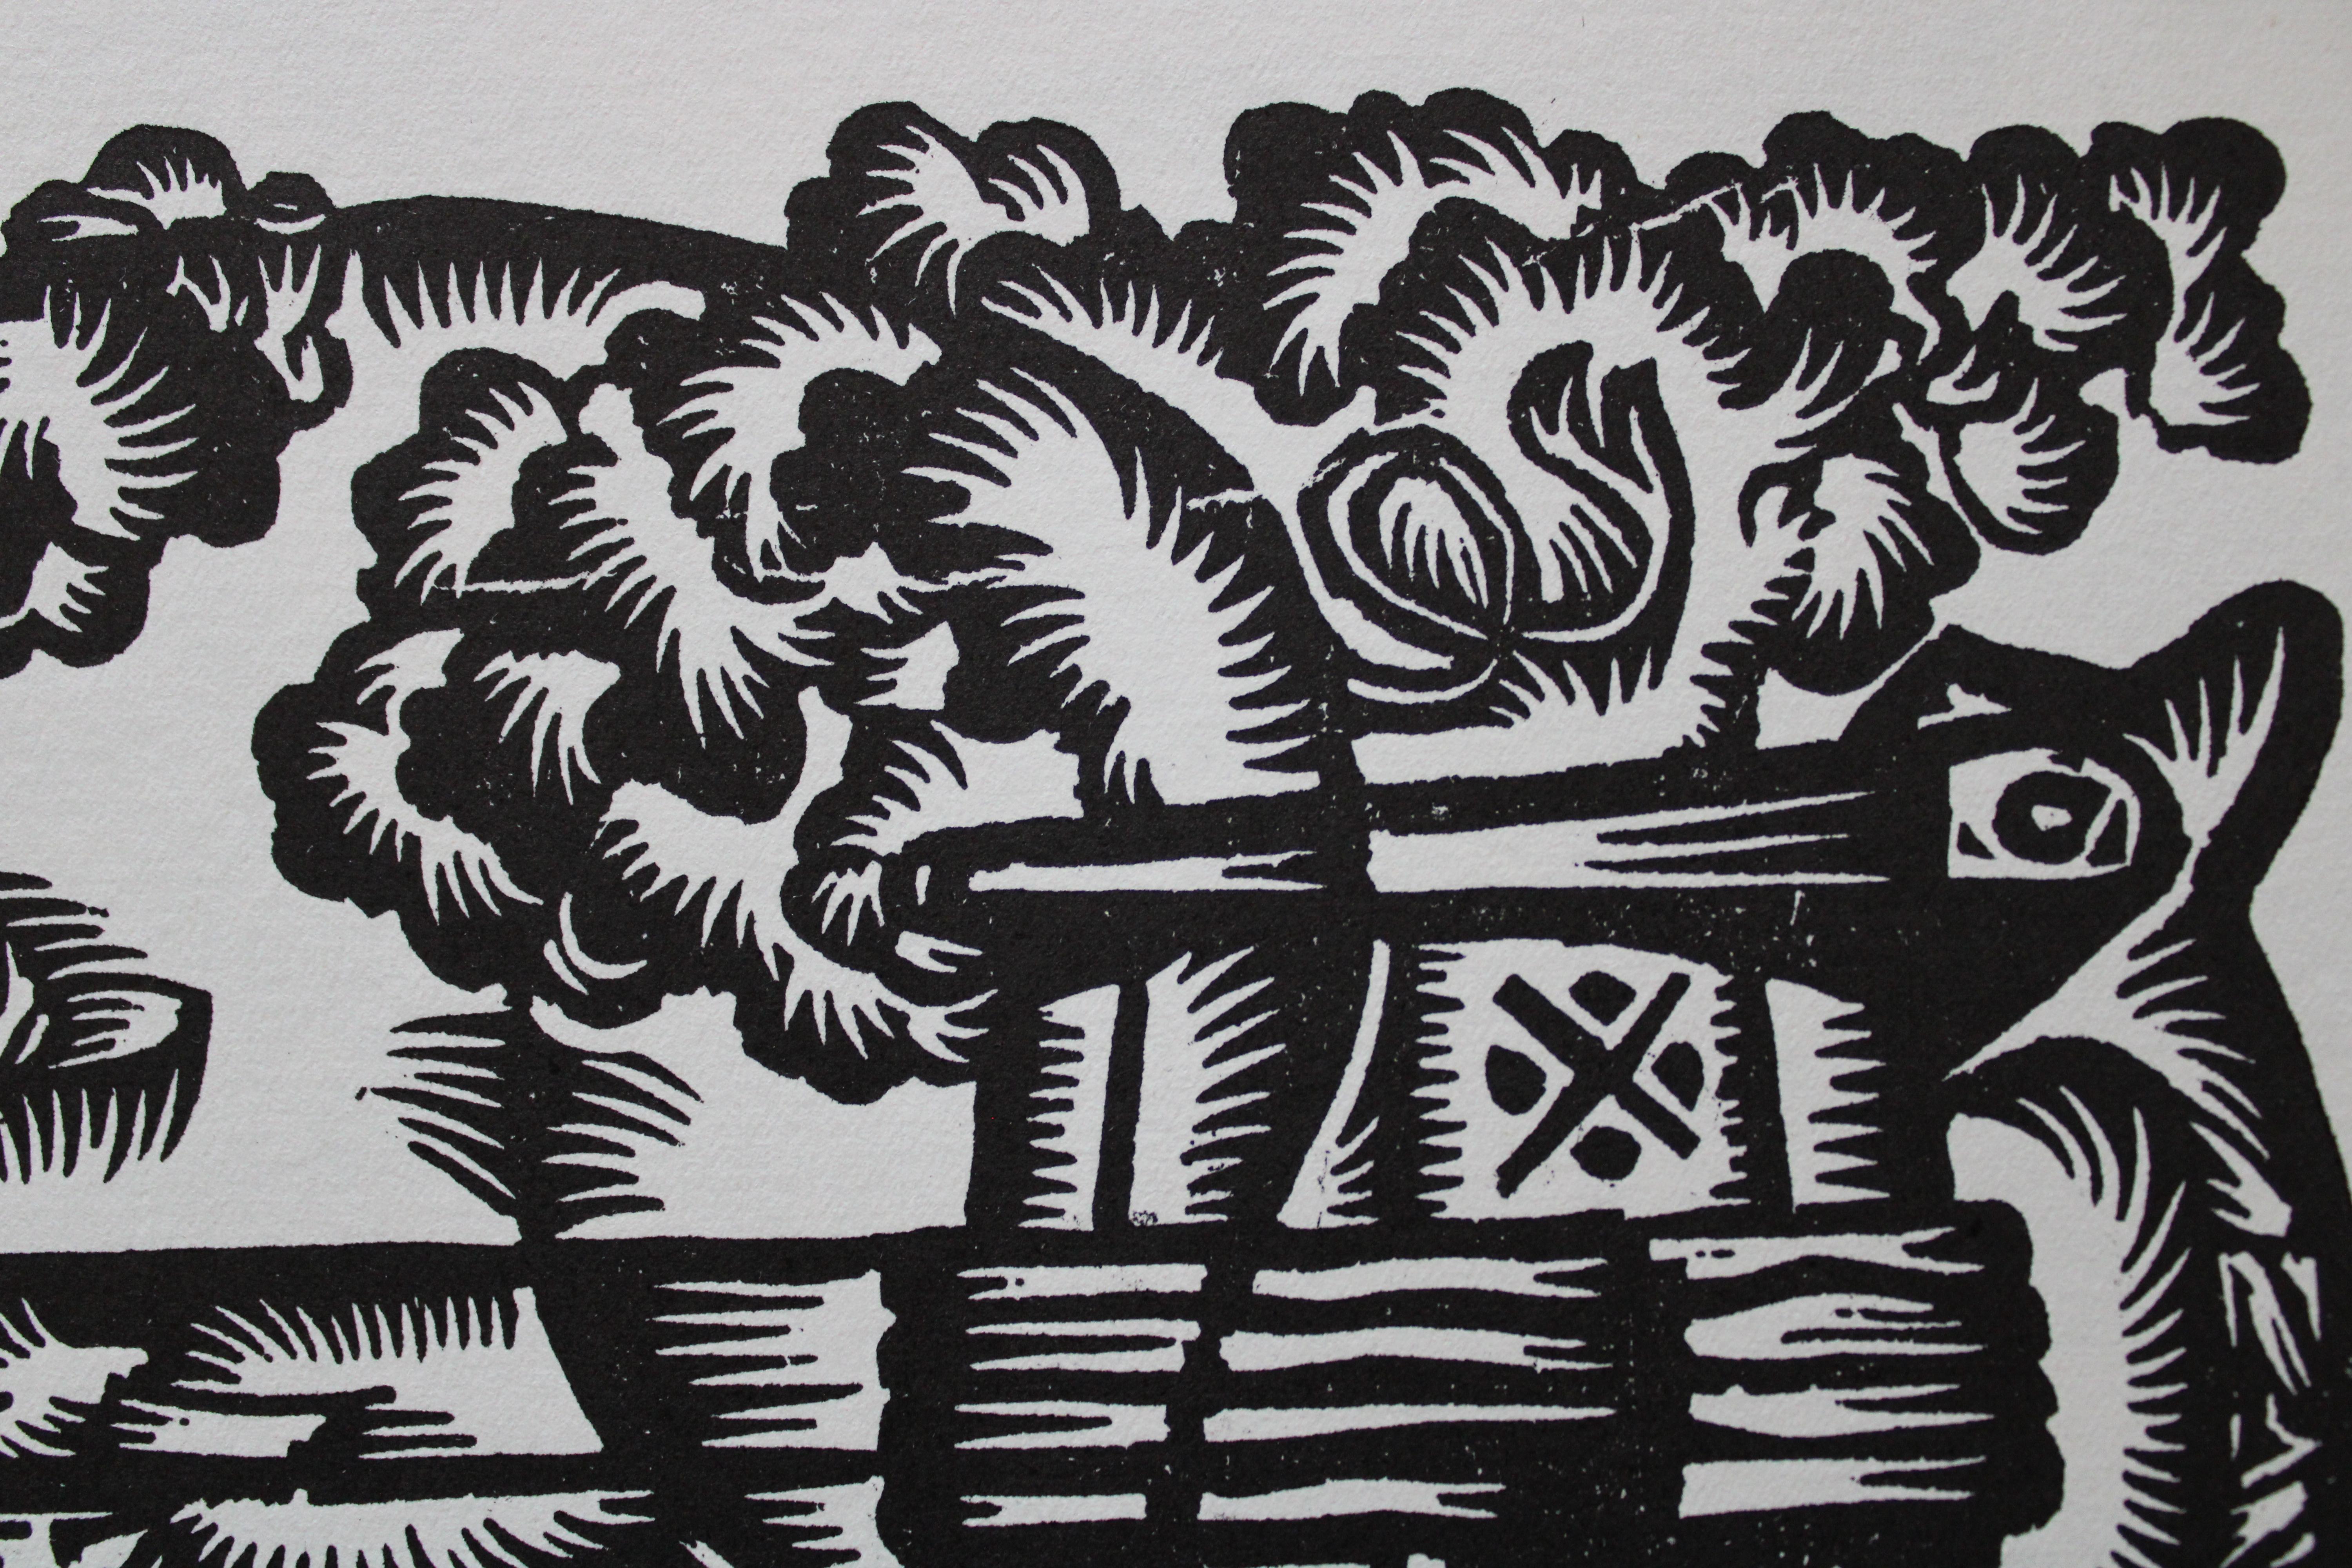 Beruf des Schweinezüchters. 1979. Papier, Linolschnitt, 25x34 cm (Grau), Animal Print, von Dainis Rozkalns